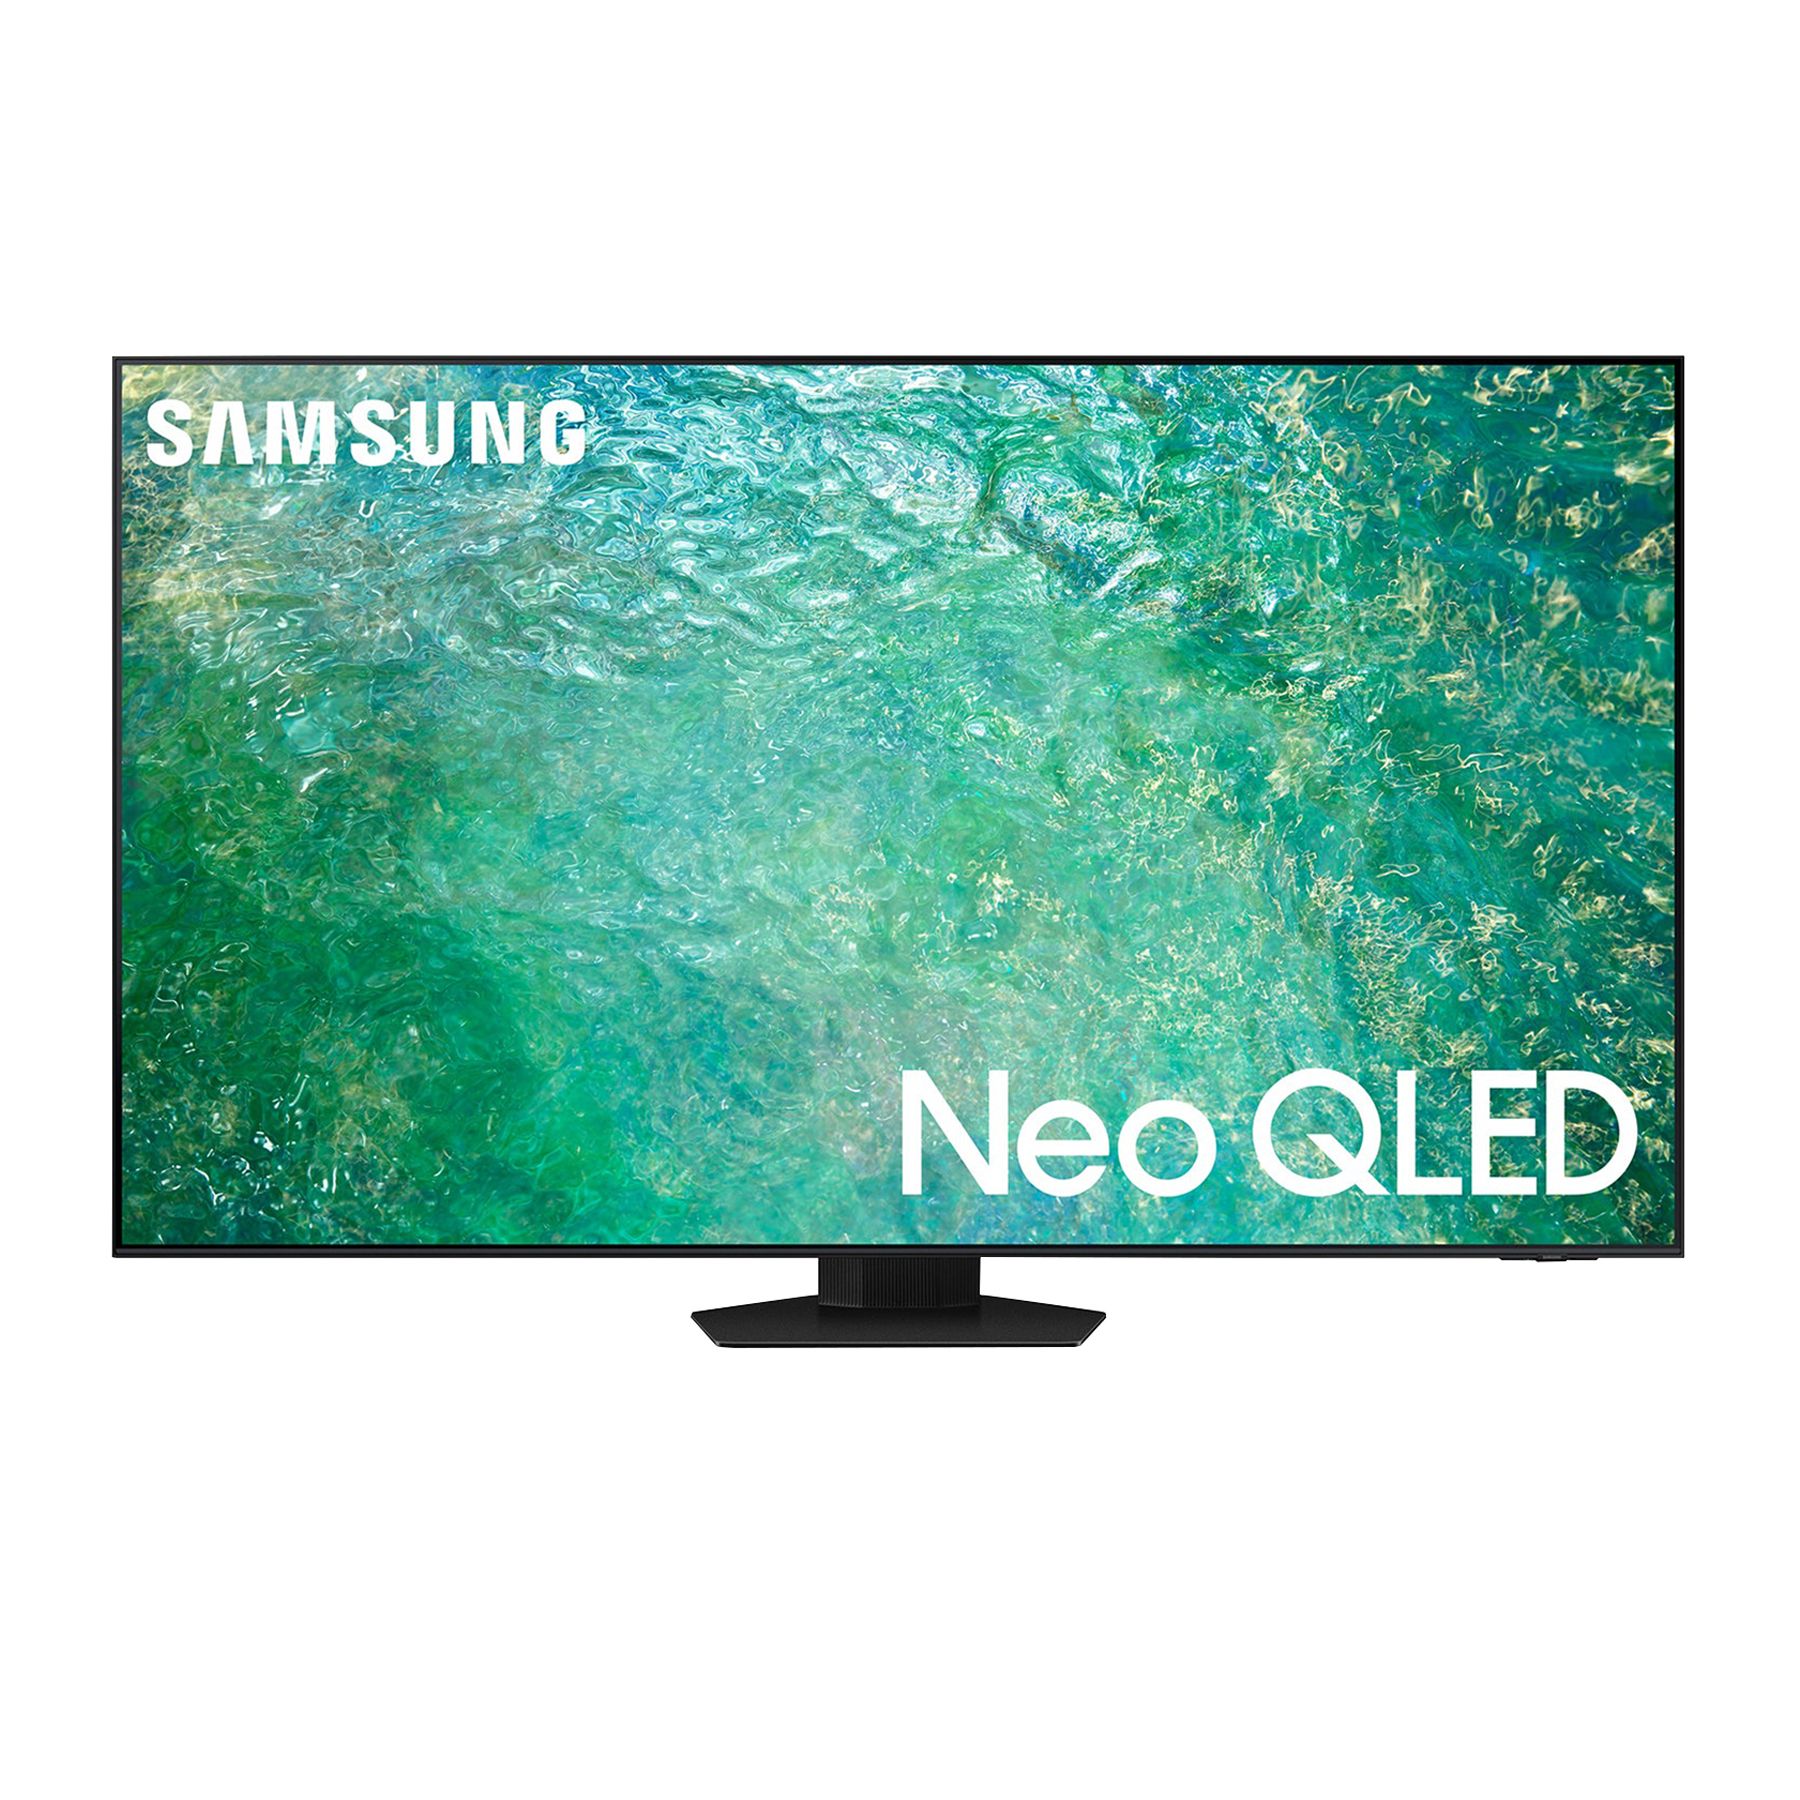 NEO PRIME 40 LED HD SMART TV